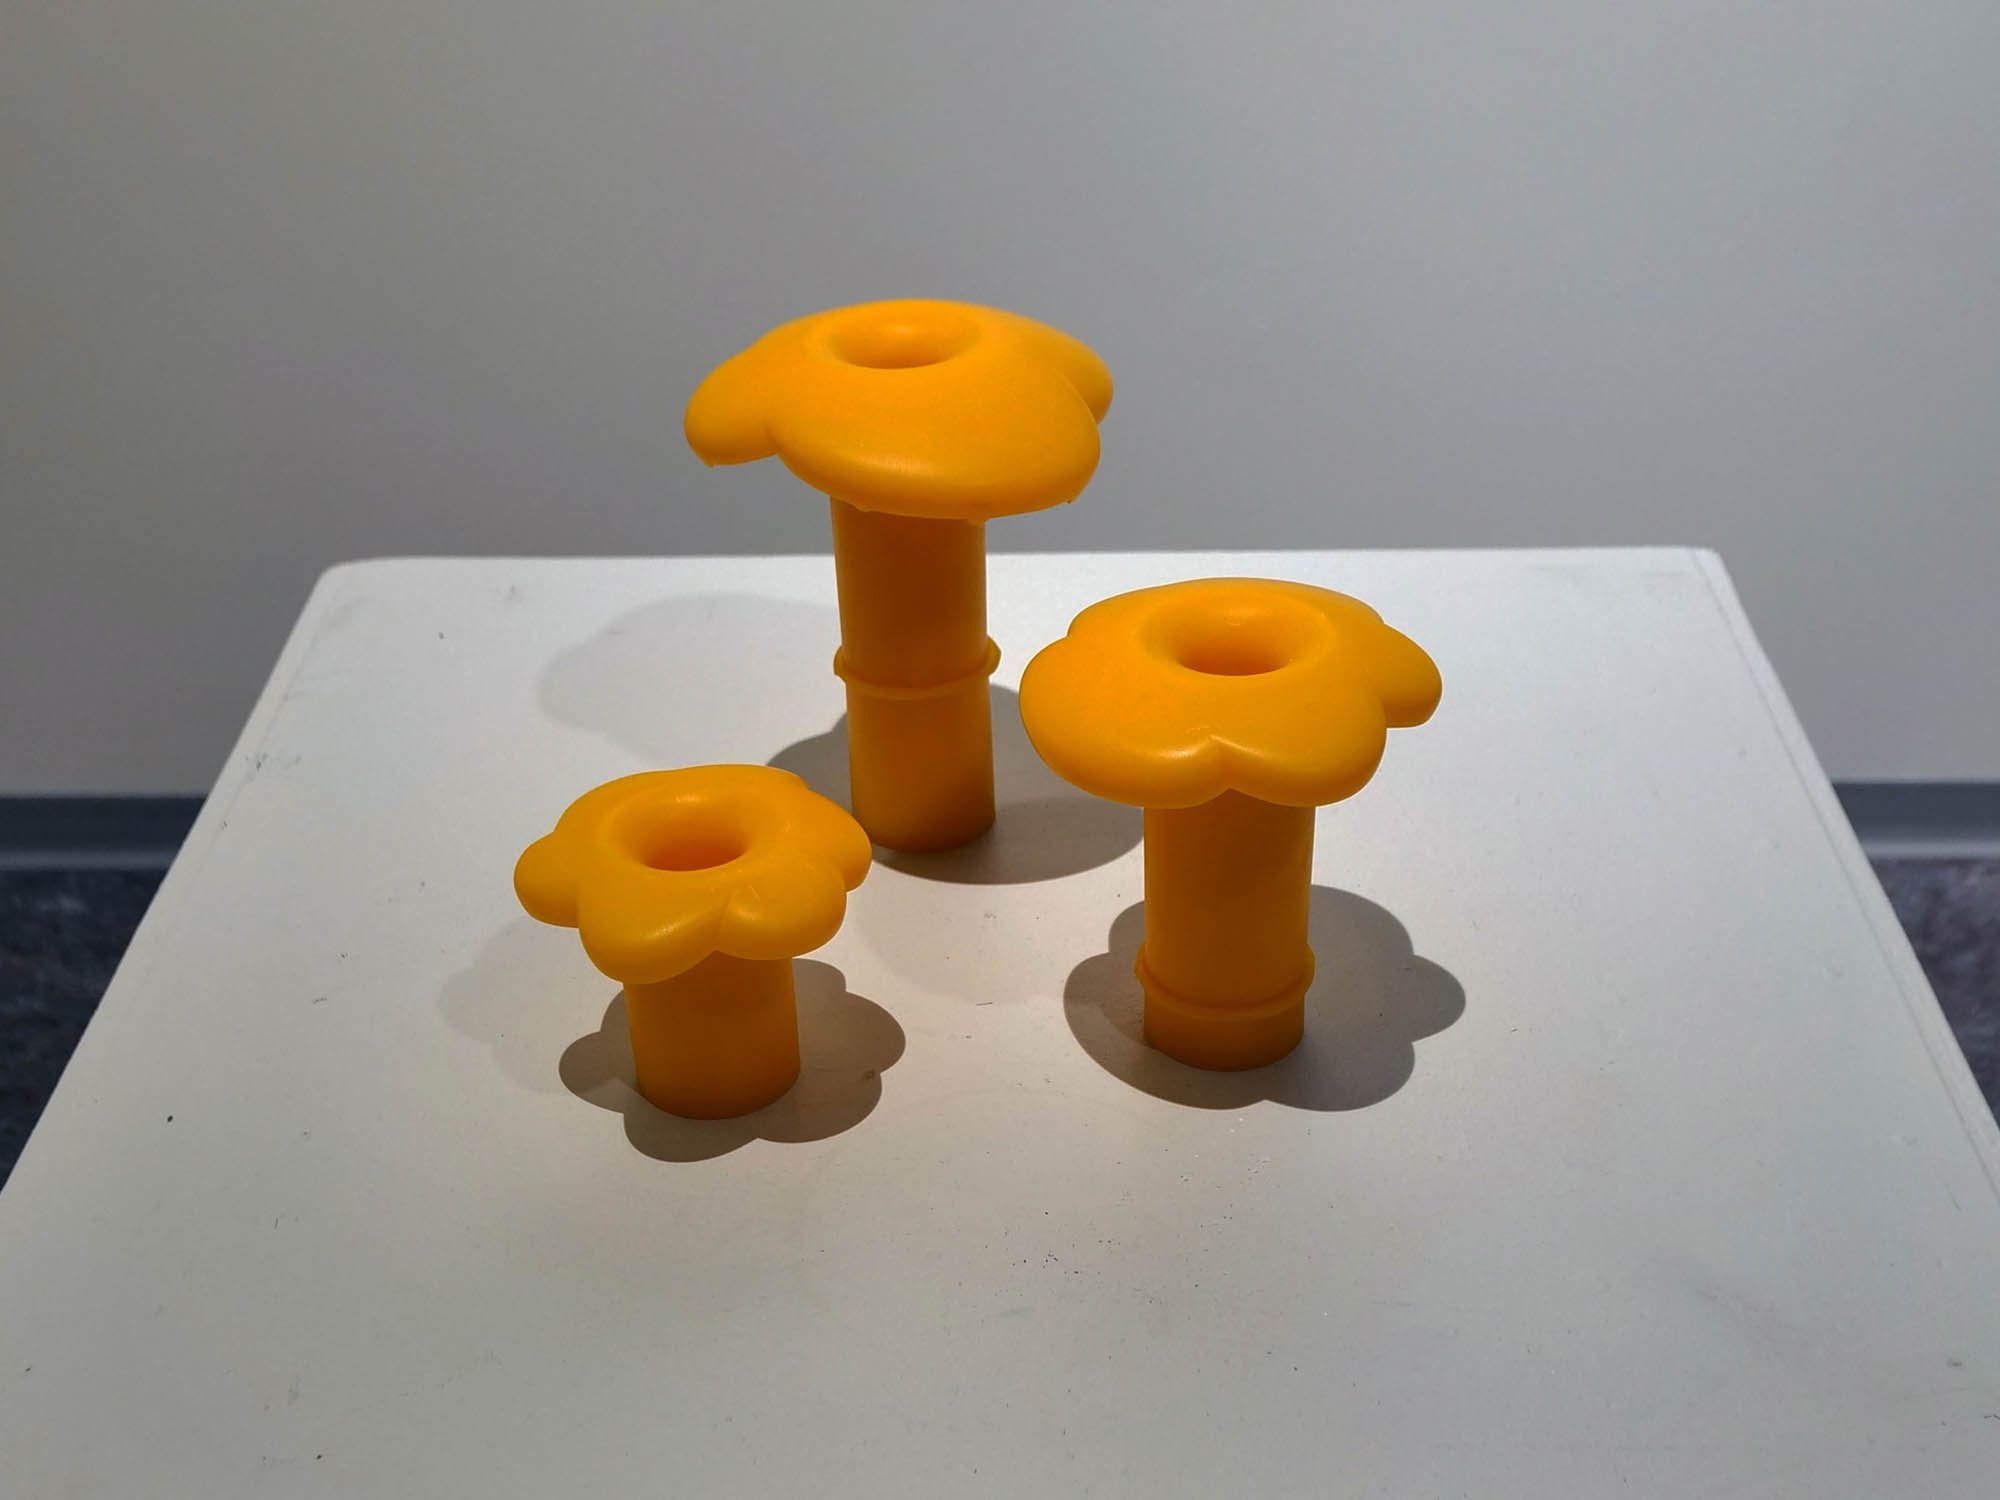   Funghi di mare  (2020) av Philipp Spillmann. Foto Inger Emilie Solheim.  